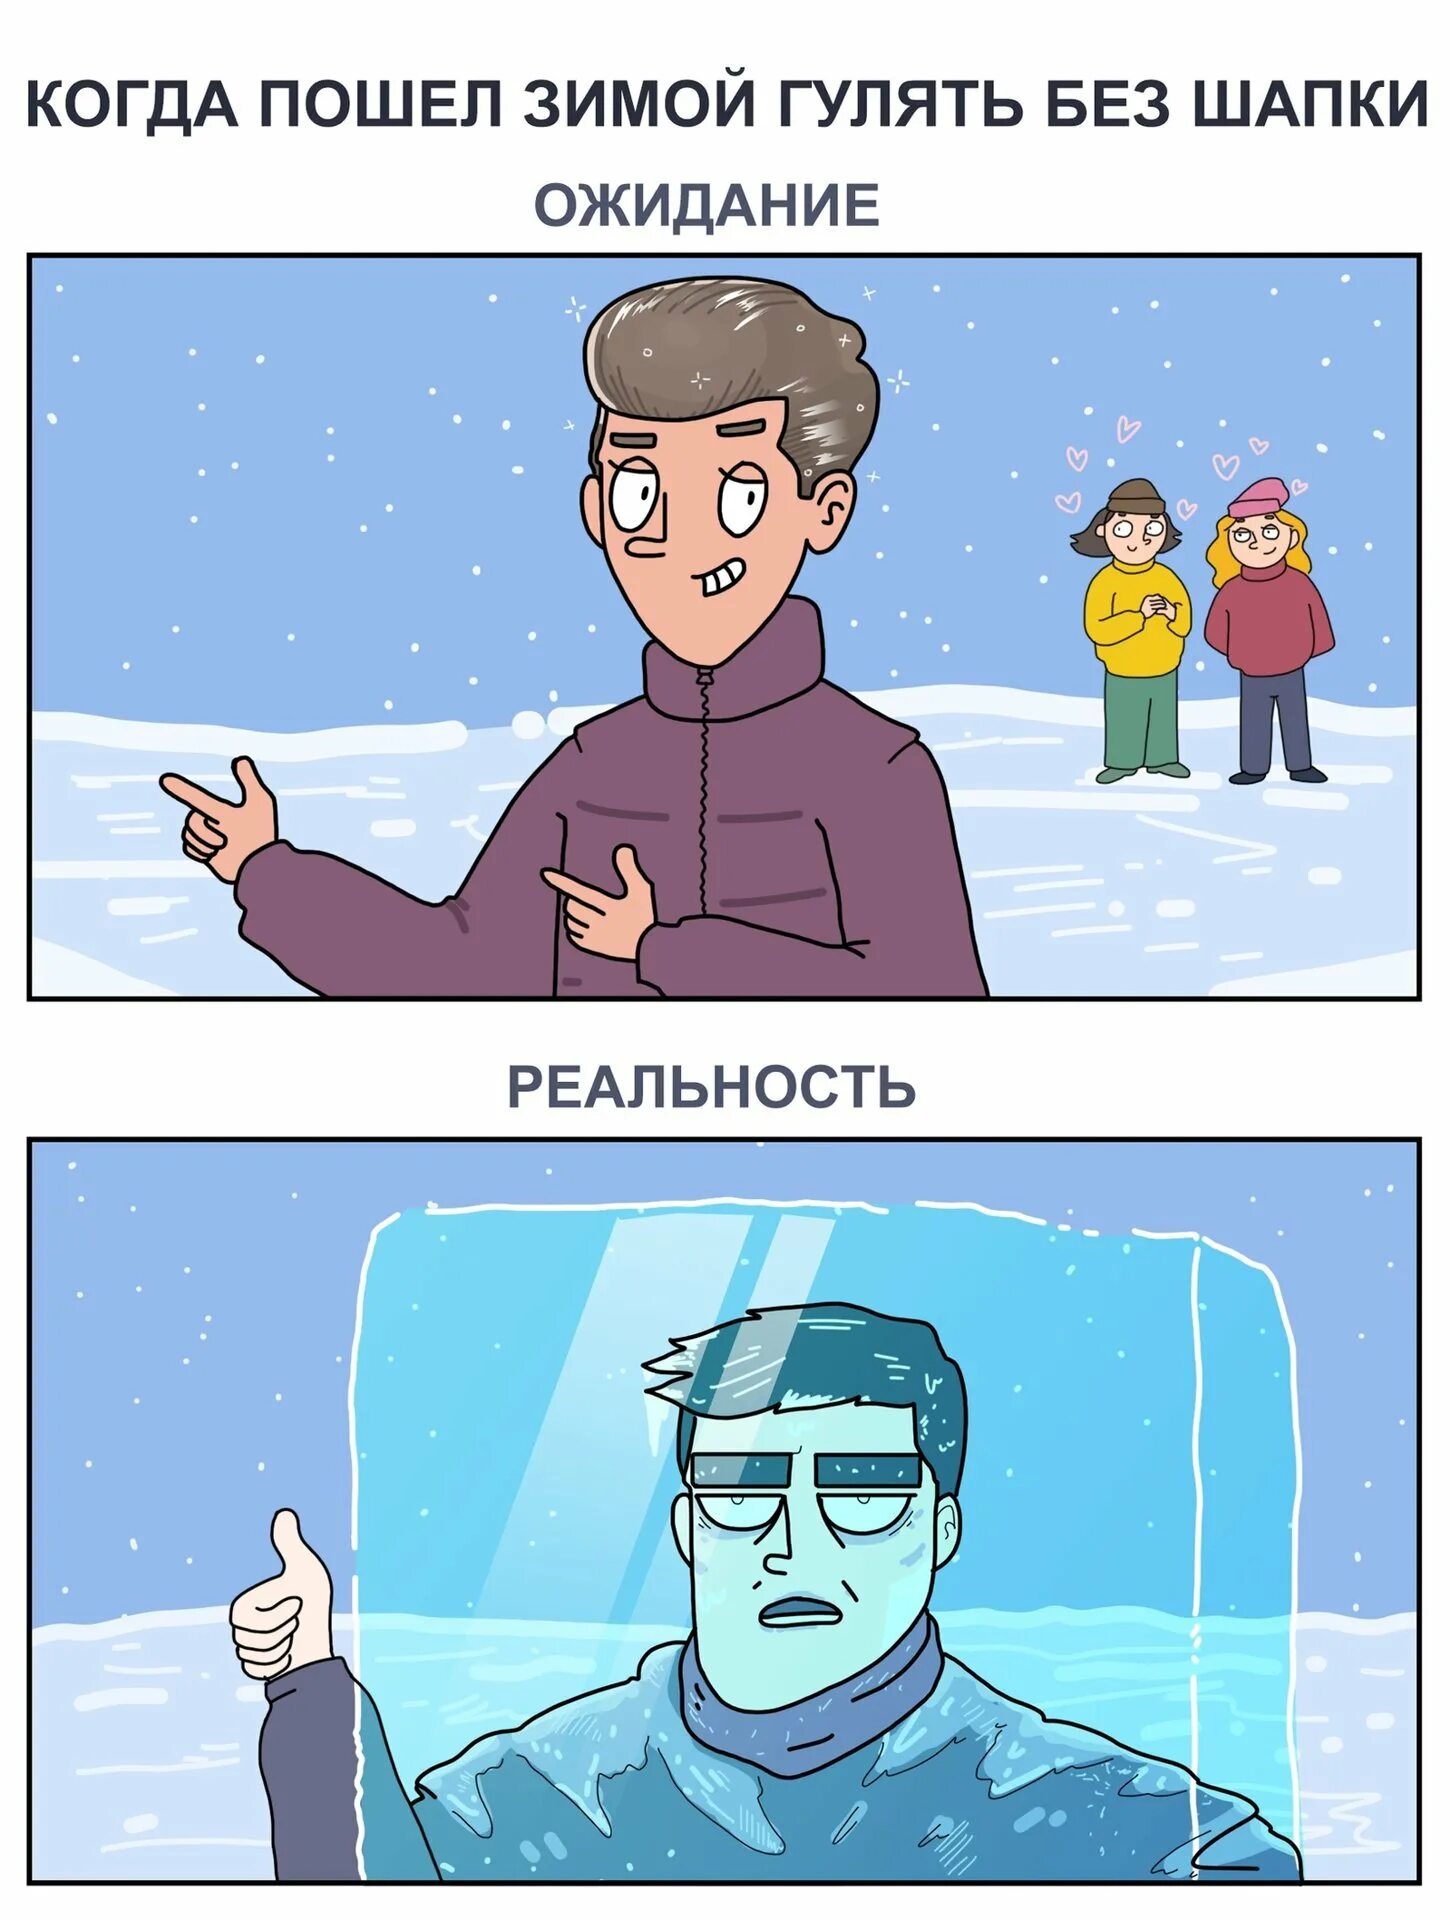 Когда можно ходить без шапки. Мемы про зиму. Комиксы про зиму. Зима мелом. Смешные комиксы про зиму.